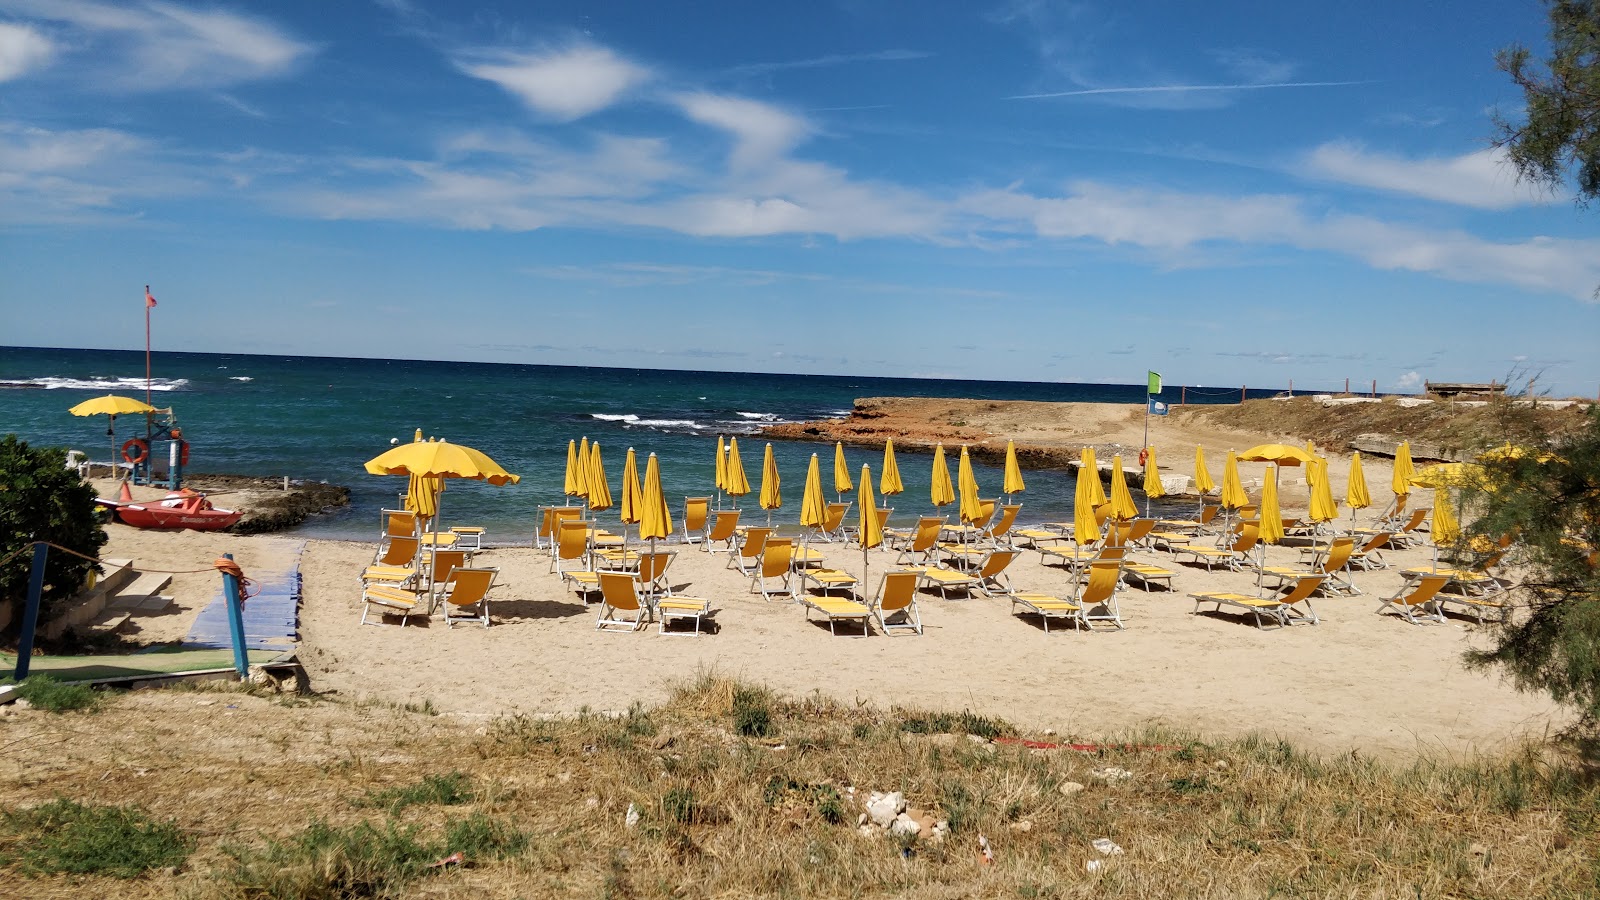 Plaia Spiaggia'in fotoğrafı parlak kum yüzey ile